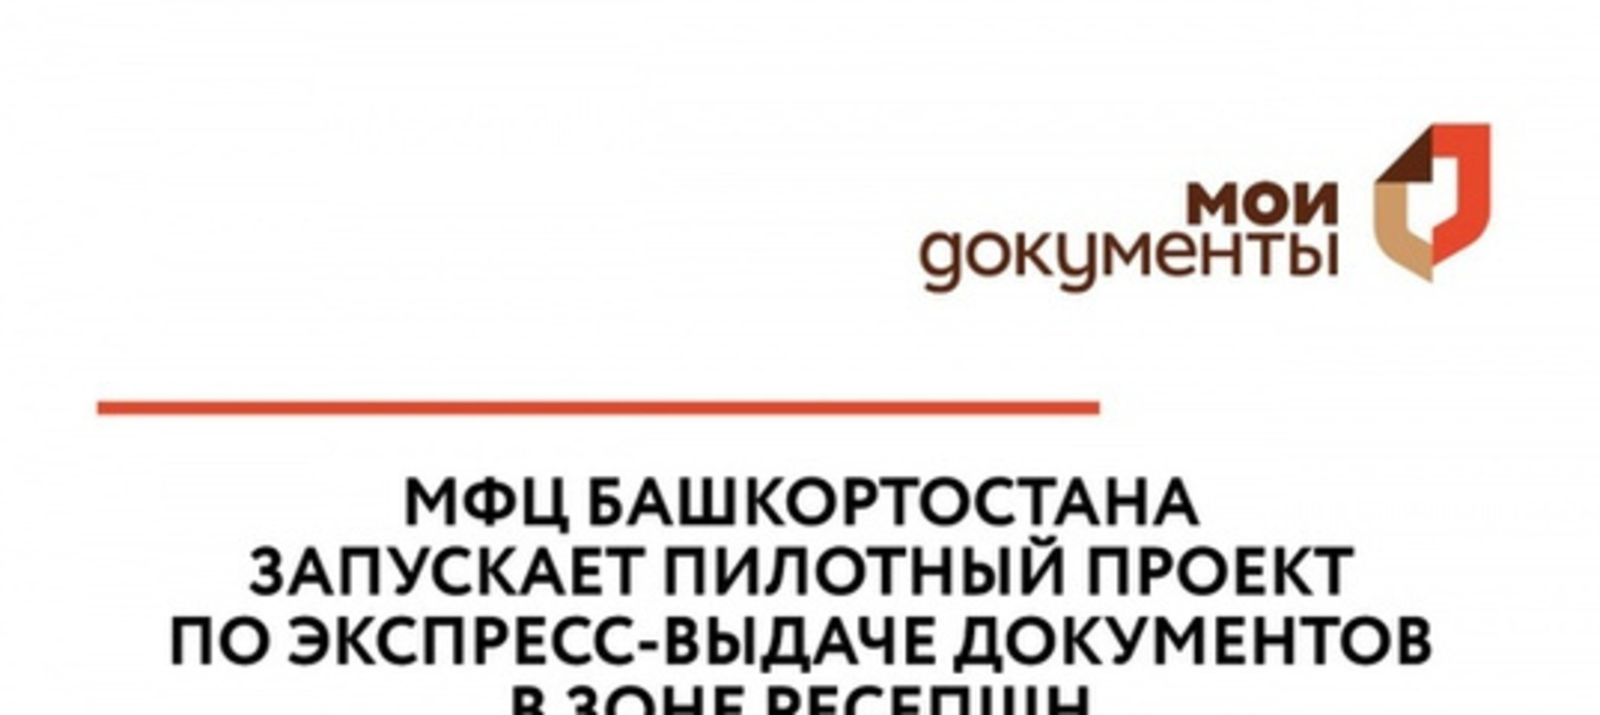 МФЦ Башкортостана запускает пилотный проект по экспресс-выдаче документов в зоне ресепшн